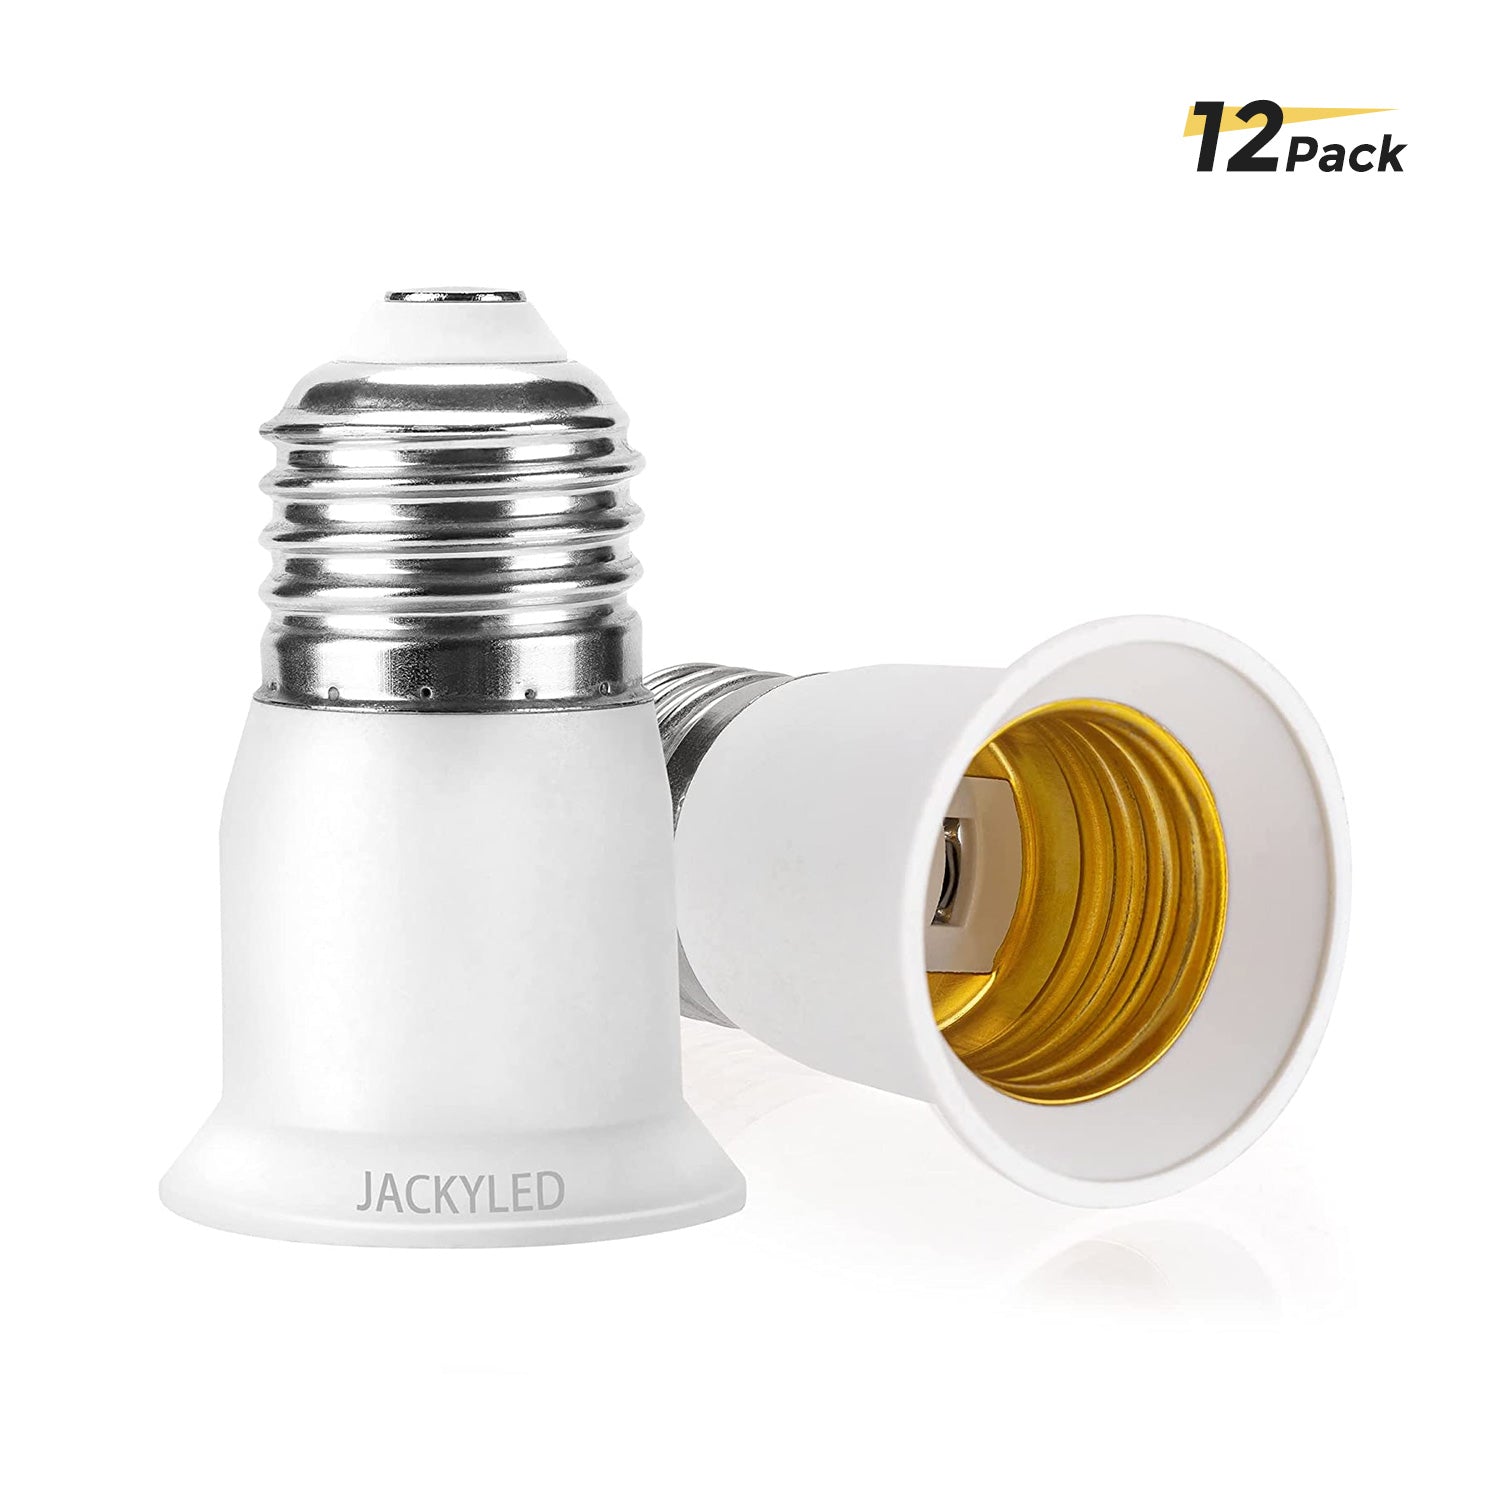 JACKYLED 3 in 1 Light Socket Splitter E26 E27 Adapter Converter